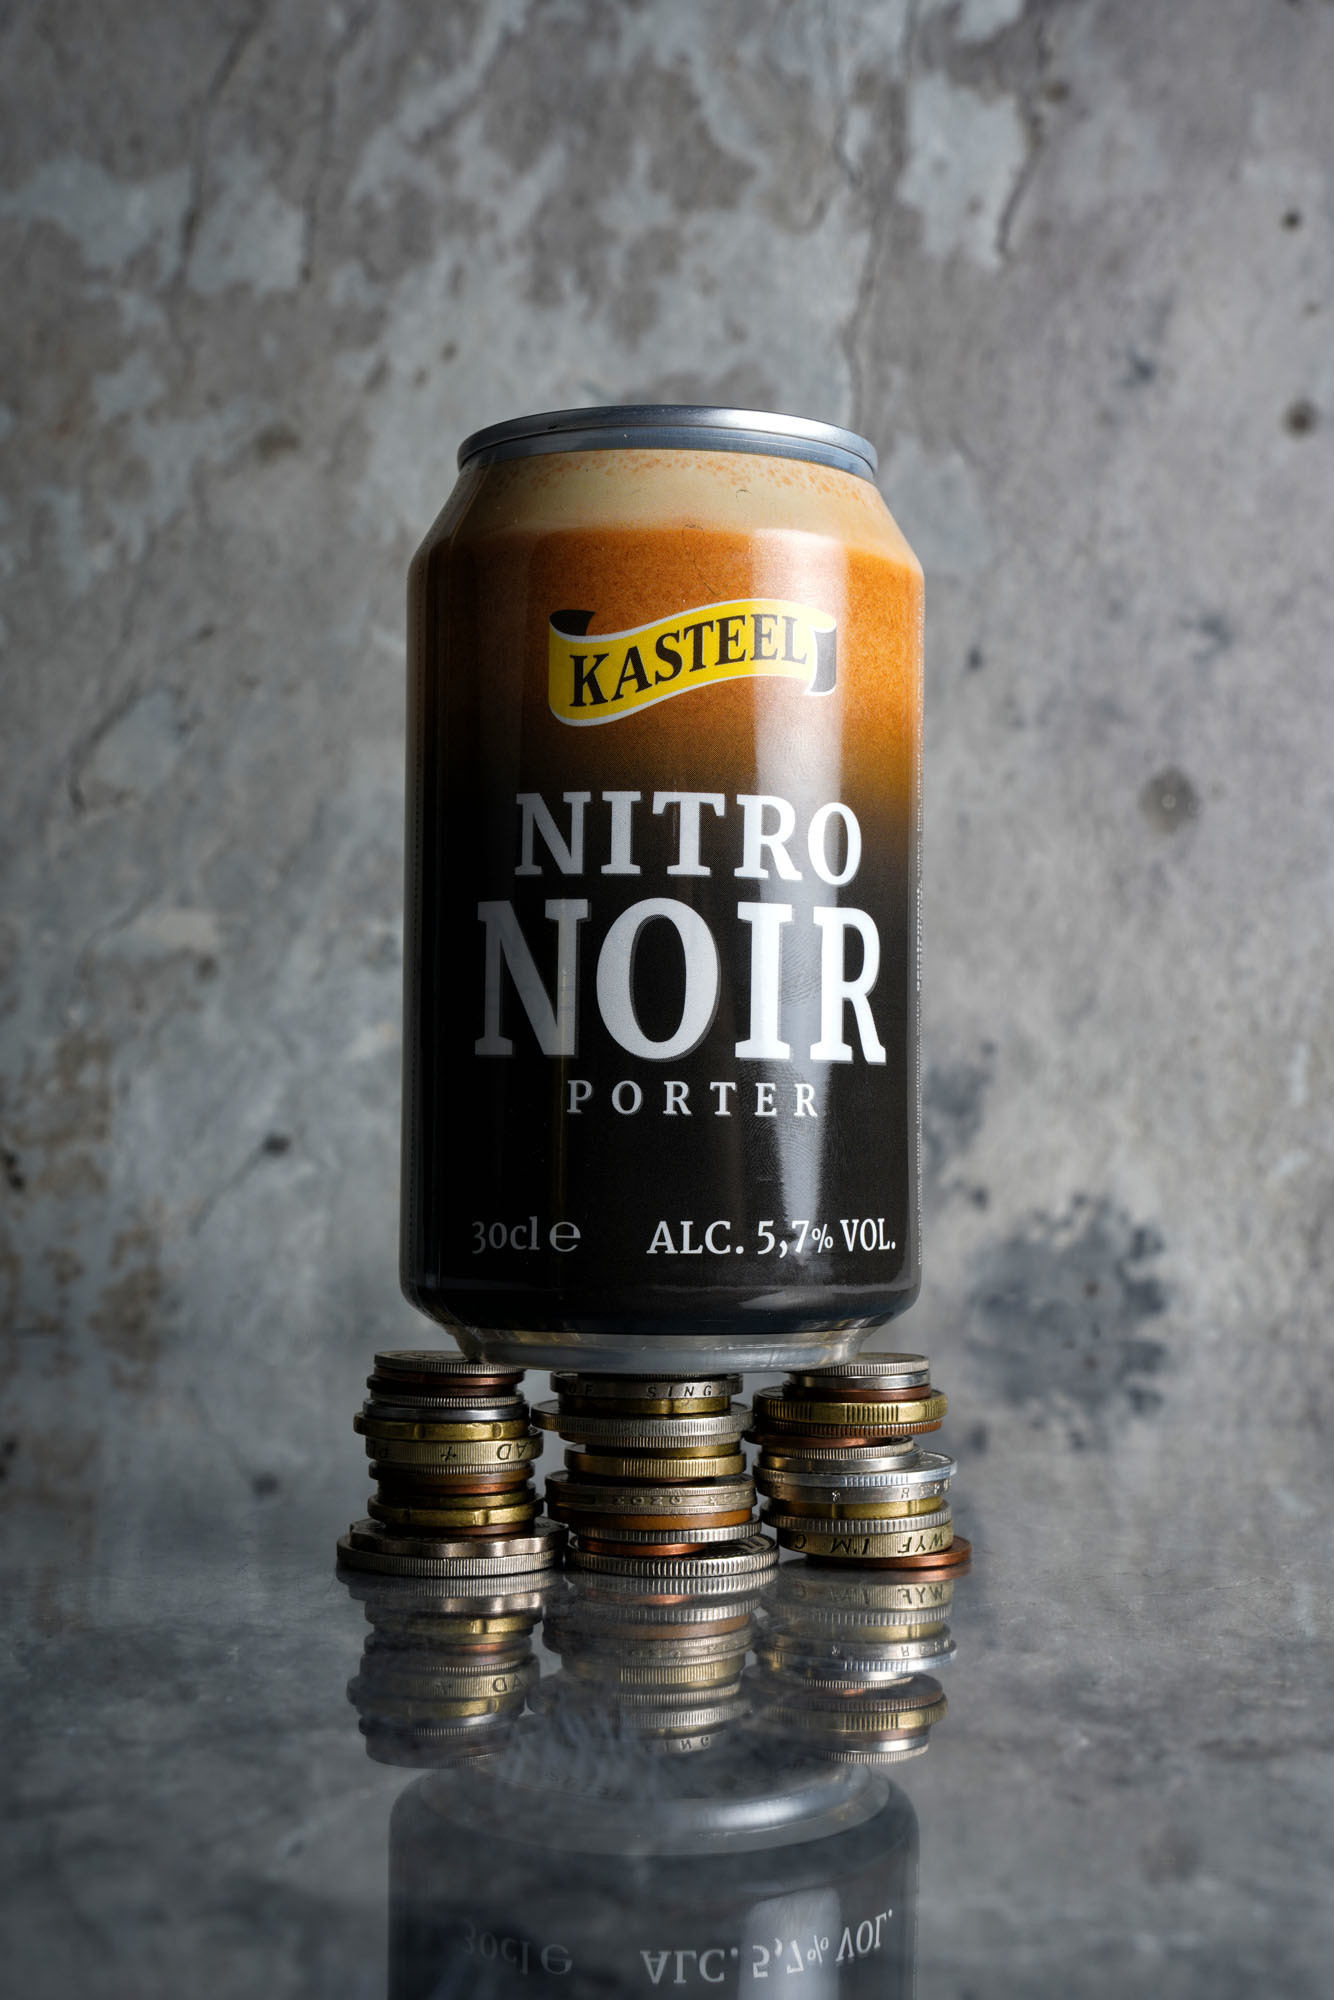 Kasteel Nitro Noir